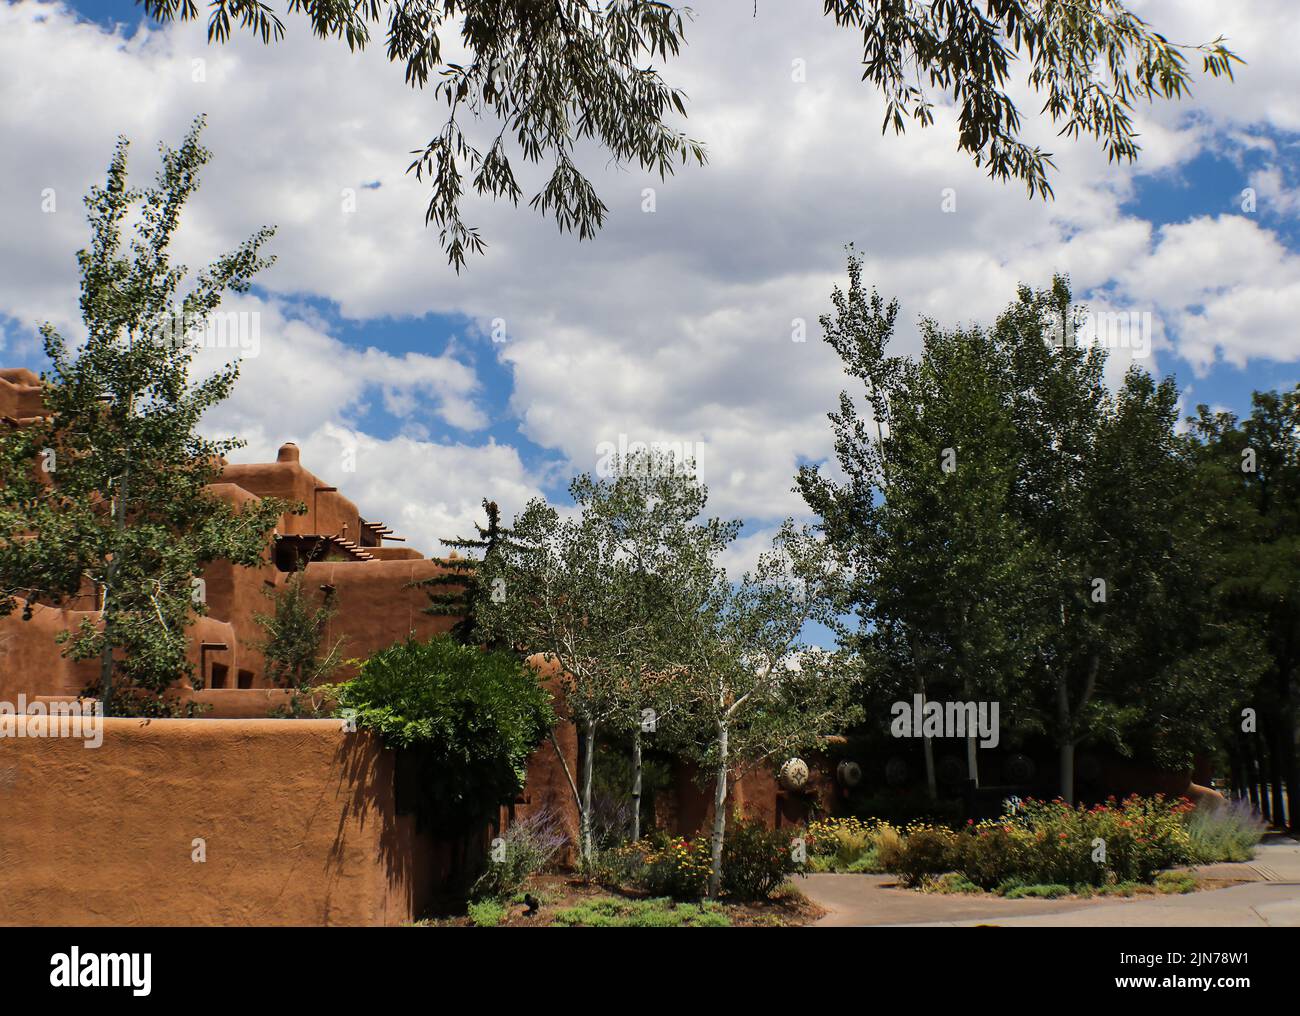 Arquitectura de adobe del suroeste bajo un cielo azul con suaves nubes blancas y rodeado y enmarcado por árboles Foto de stock